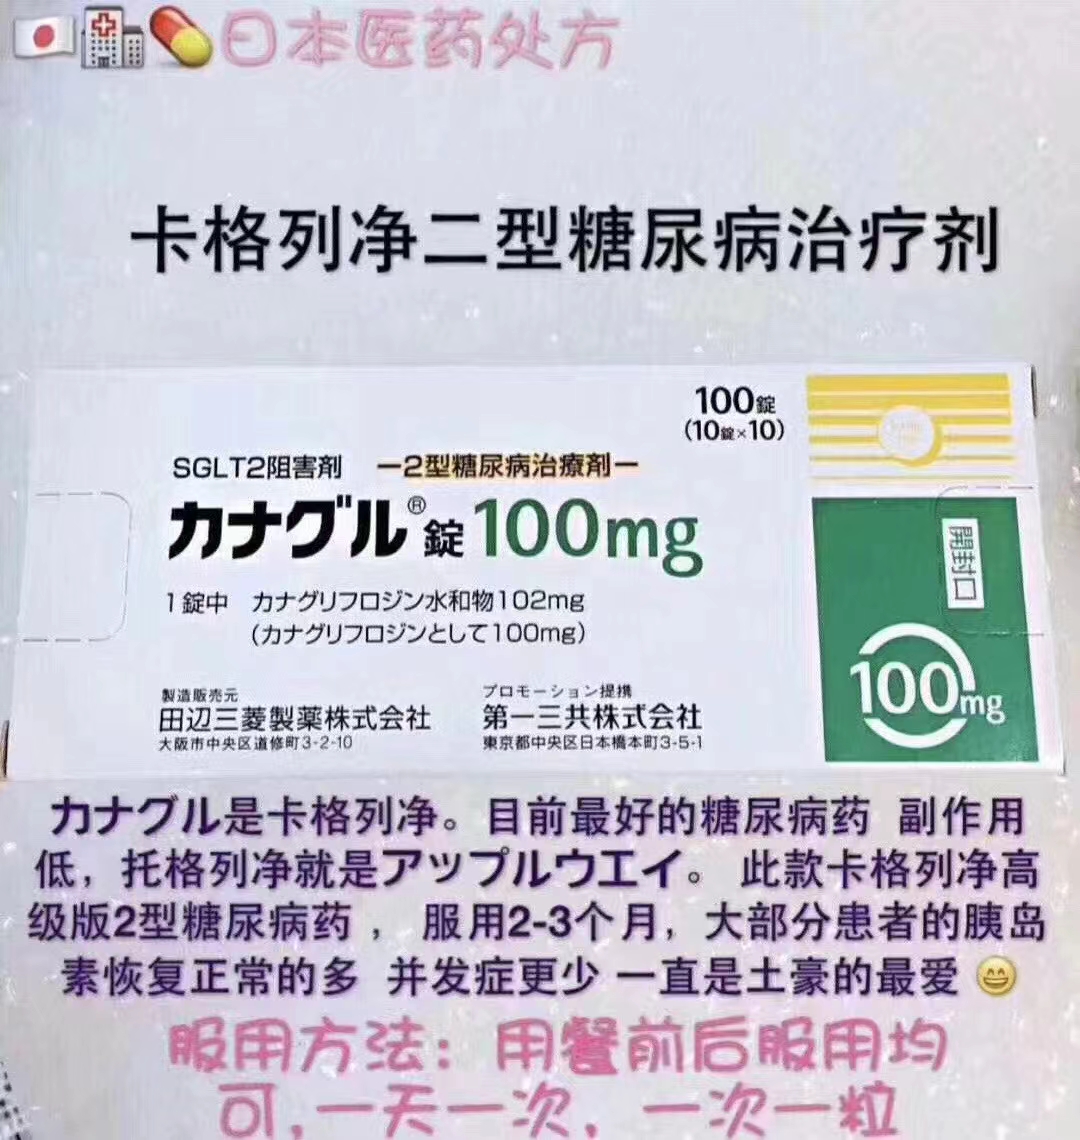 日本卡格列净二型糖尿病治疗剂说明书价格